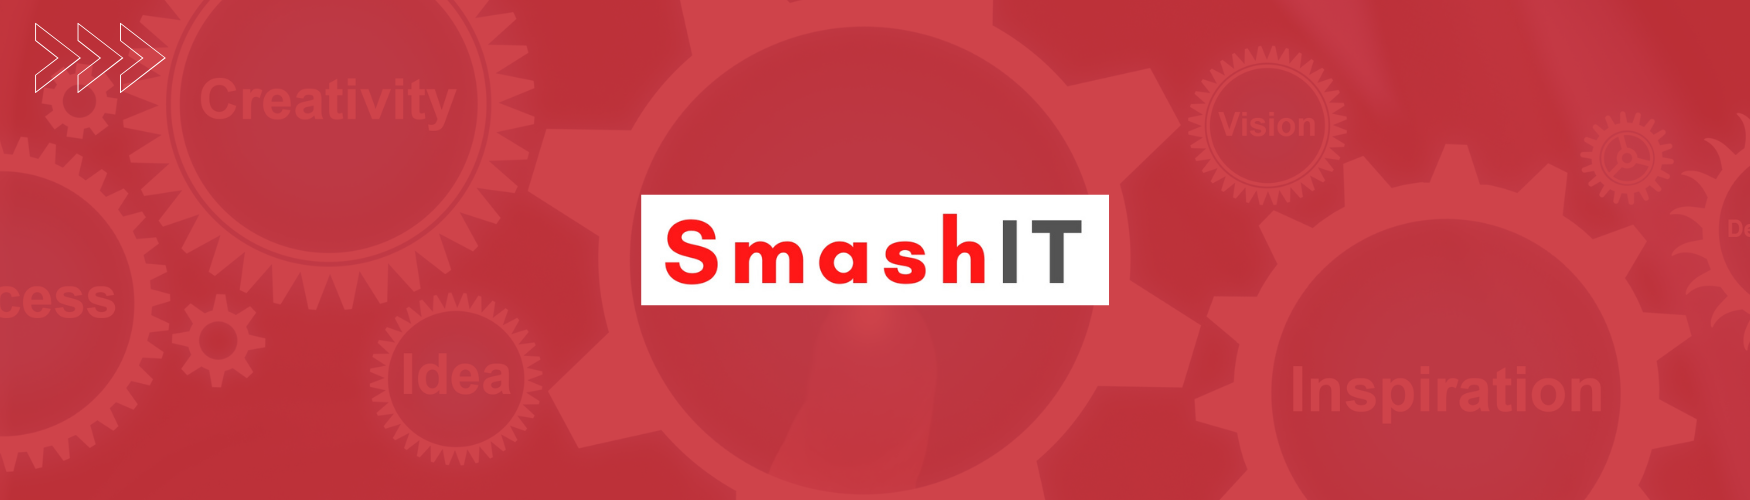 SmashIT "Tecnología para Retail"